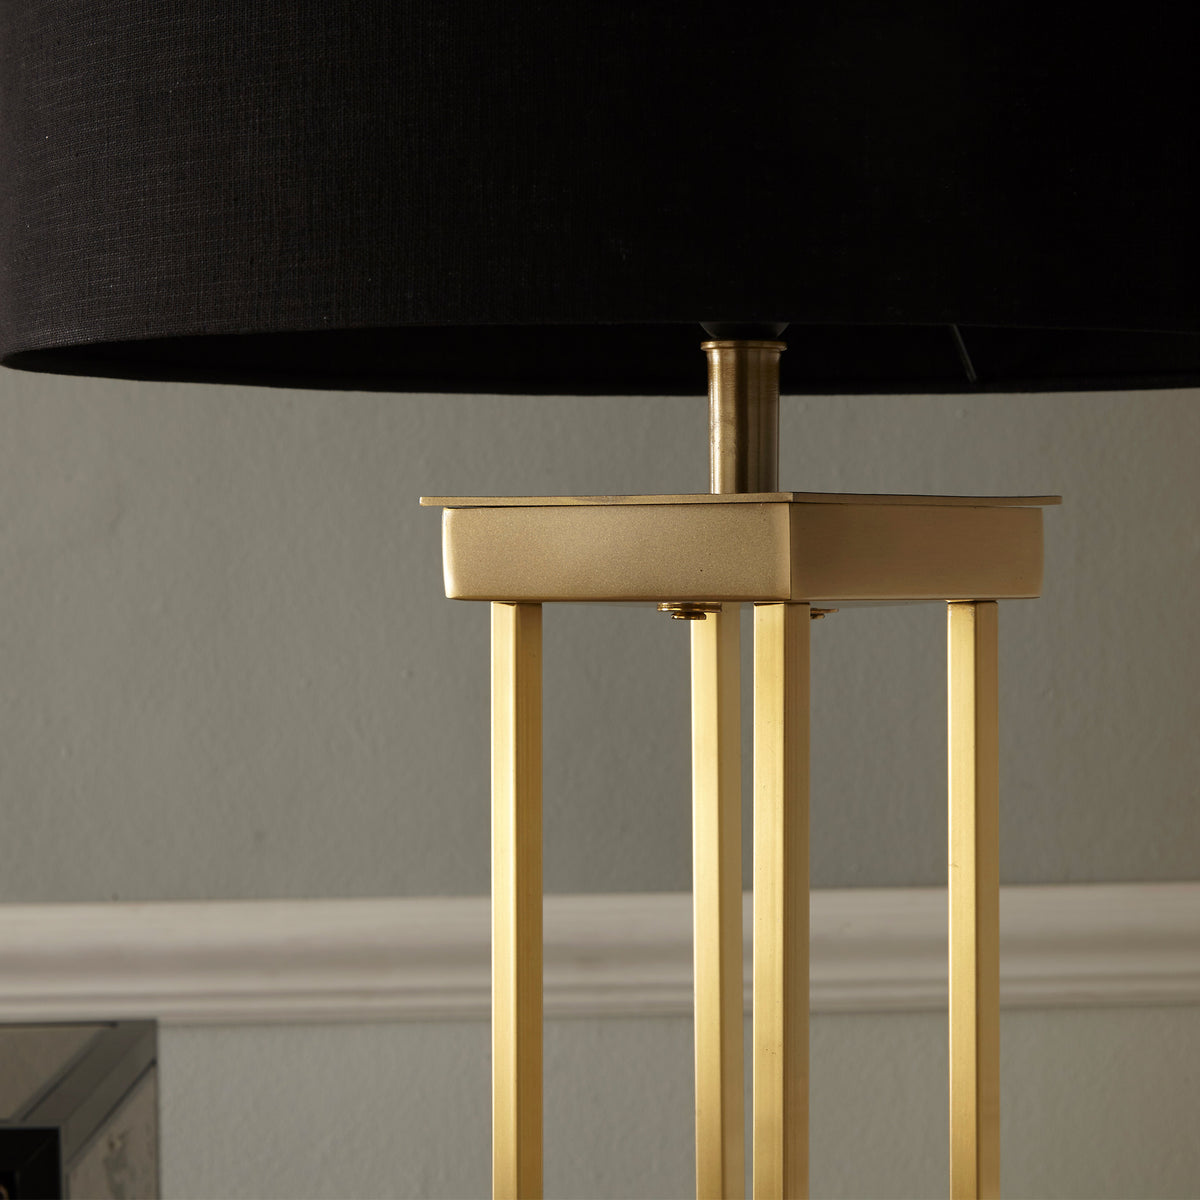 Langston Satin Brass Metal 4 Post Floor Lamp for living room